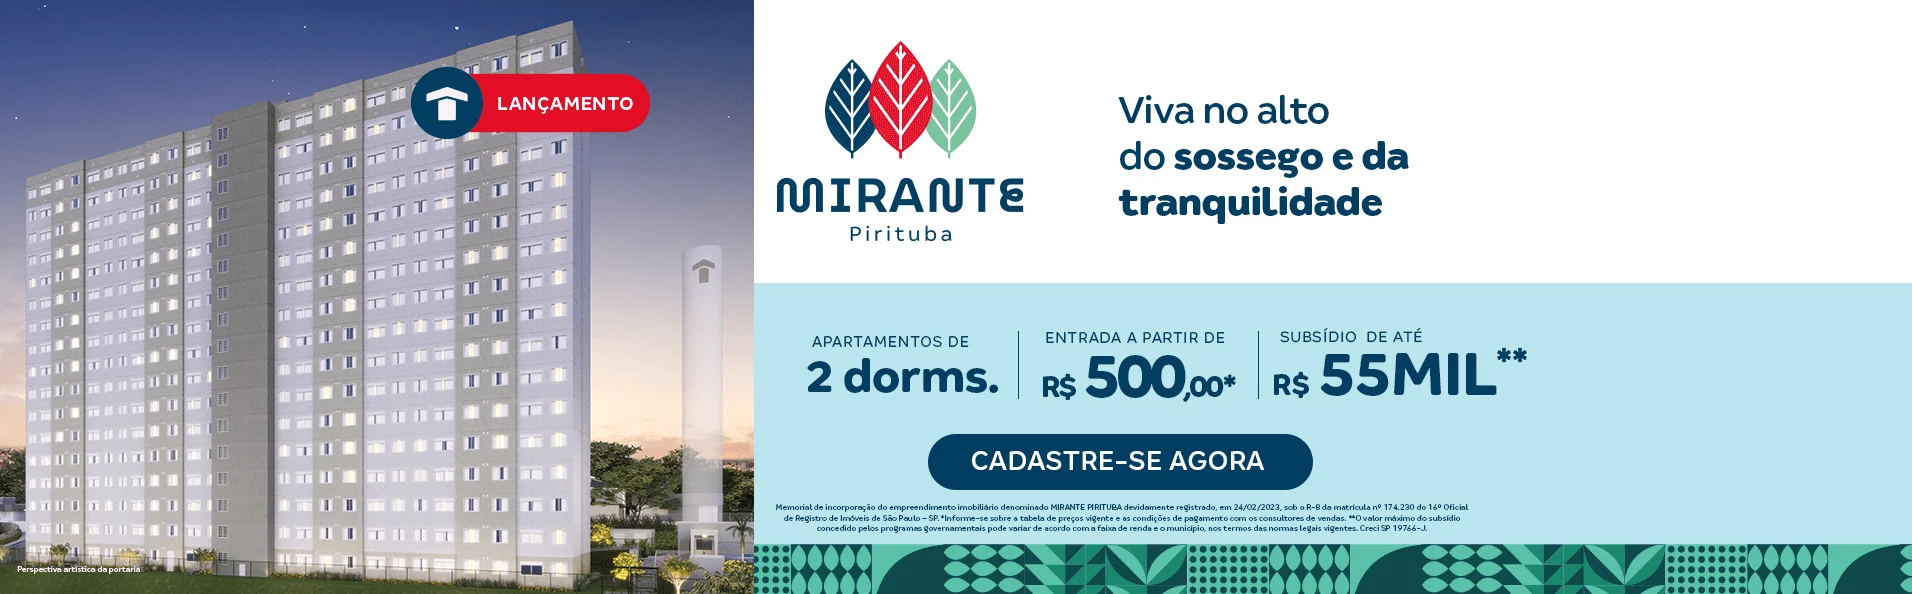 Descubra como é morar na melhor região de Pirituba - SP. Conheça o lançamento da Construtora Tenda, Mirante Pirituba.